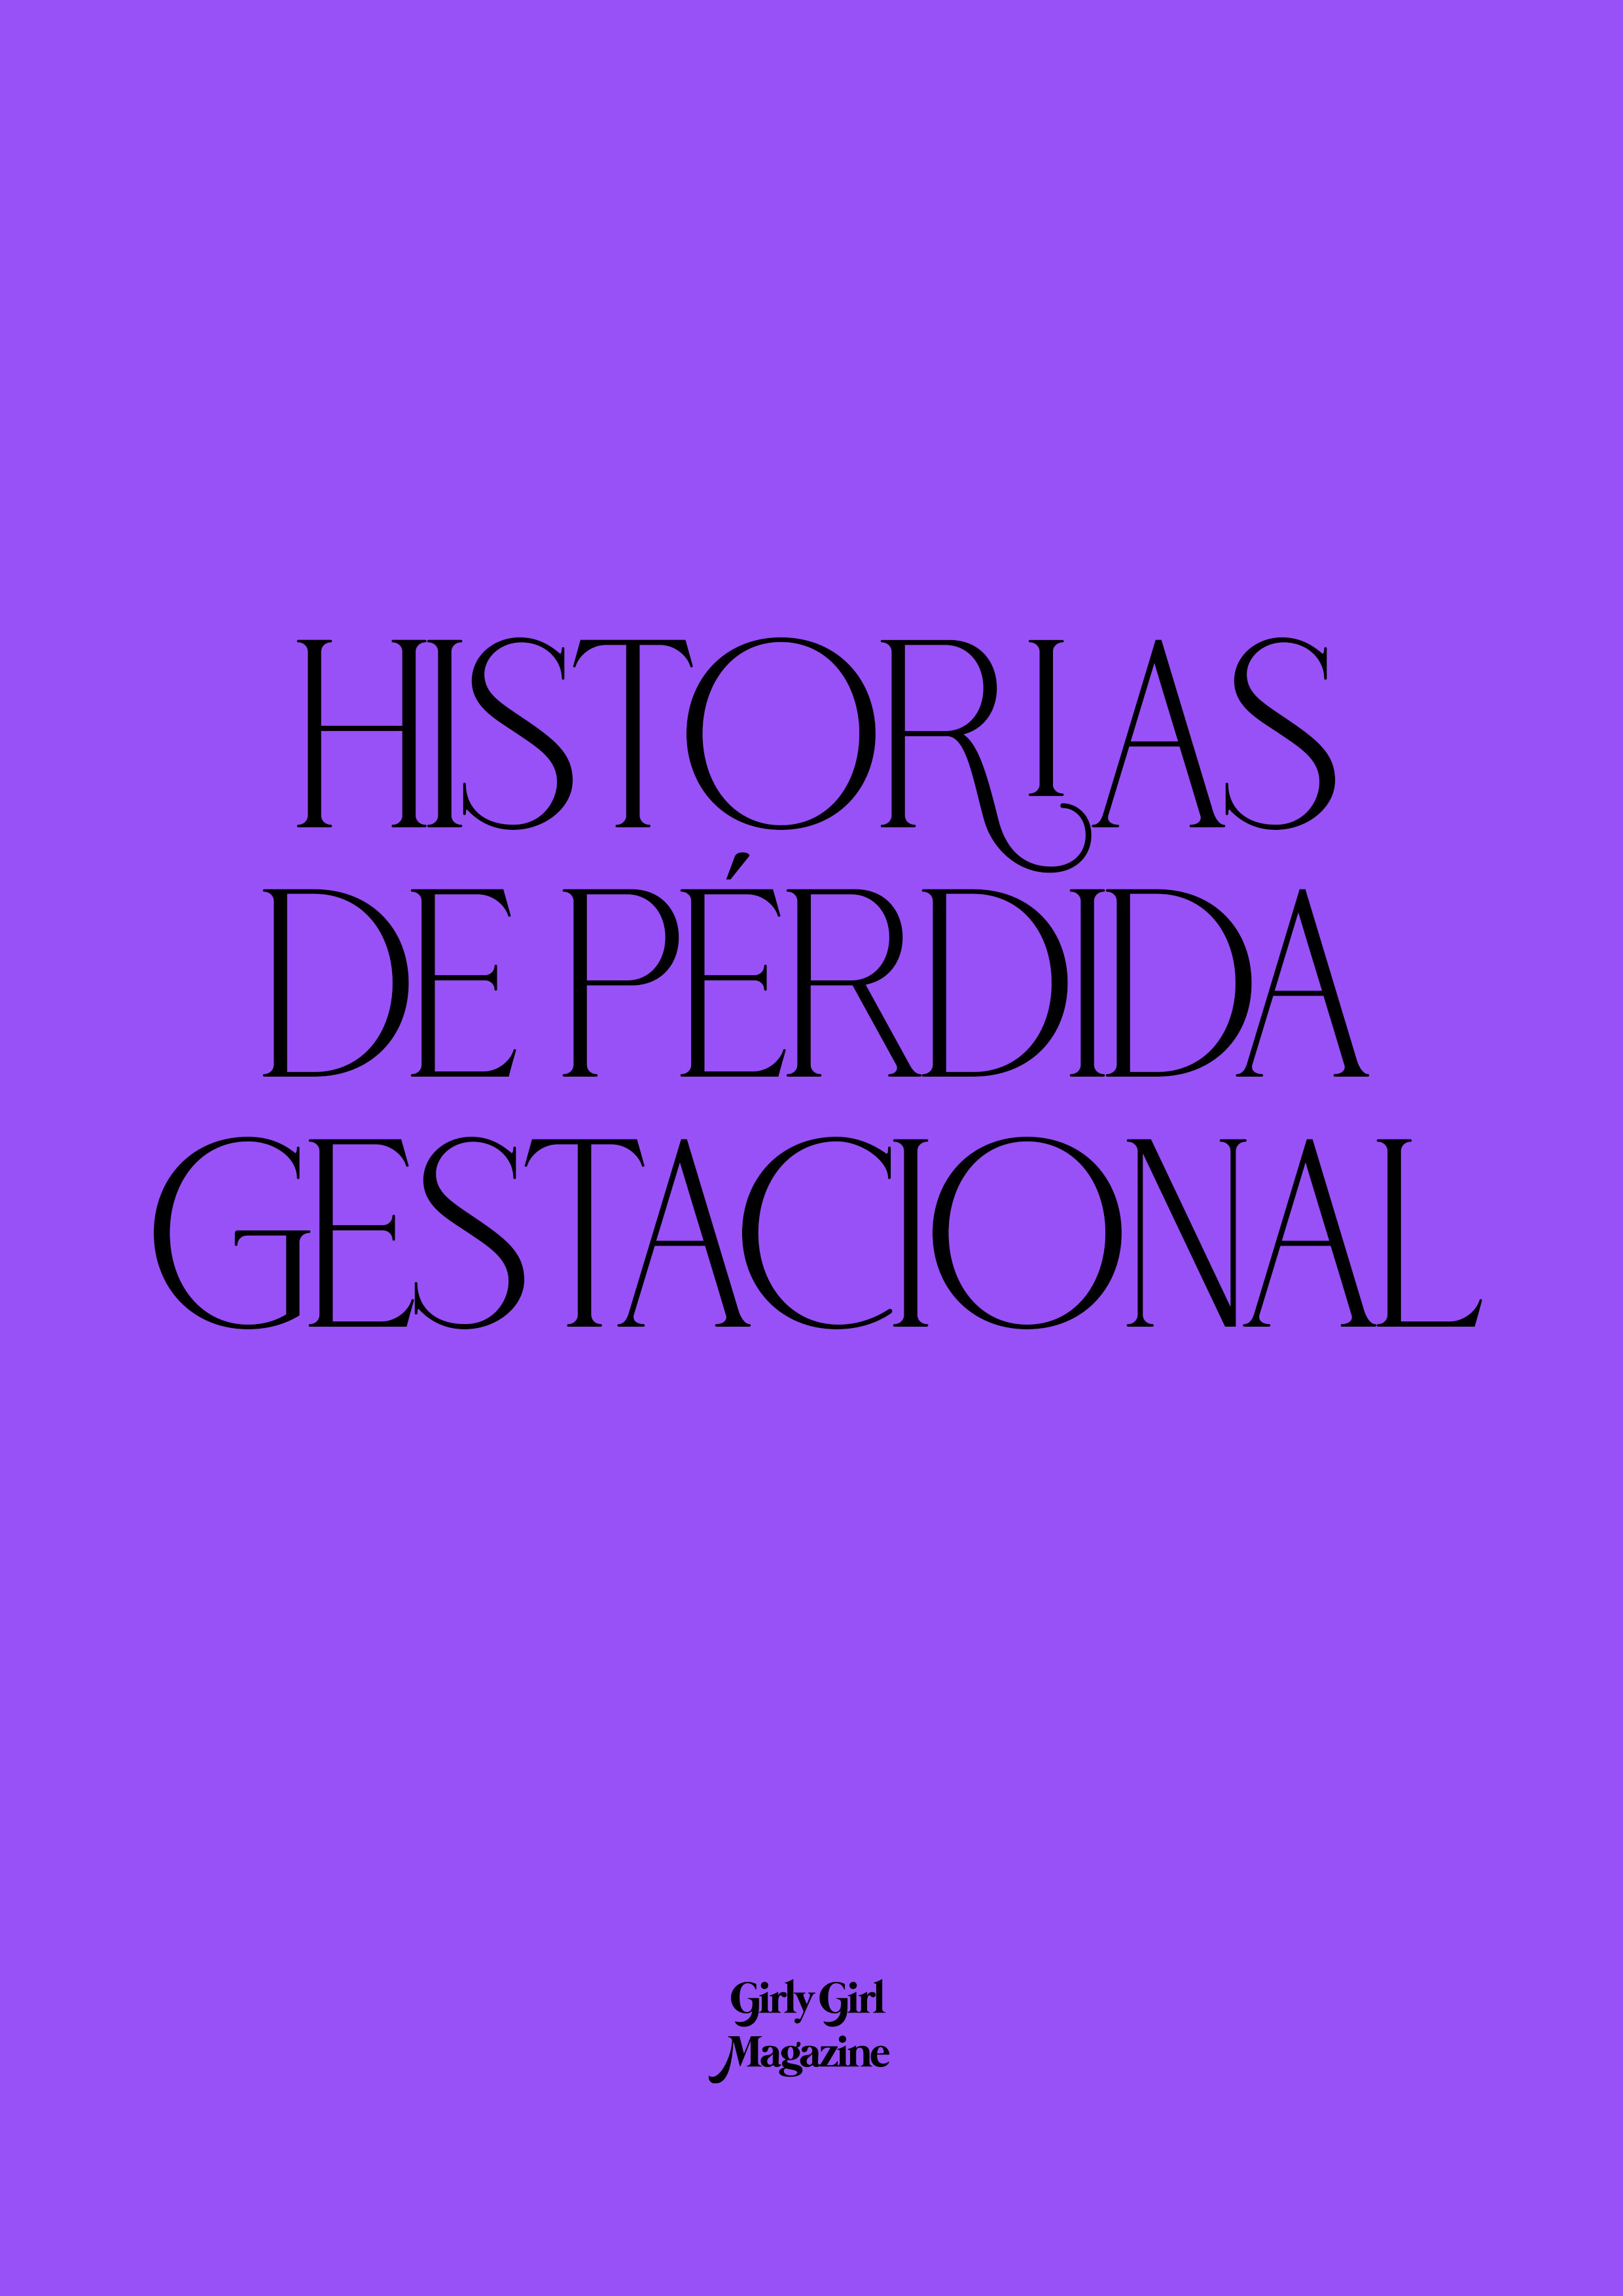 HISTORIAS DE PÉRDIDA GESTACIONAL — Girly Girl Magazine